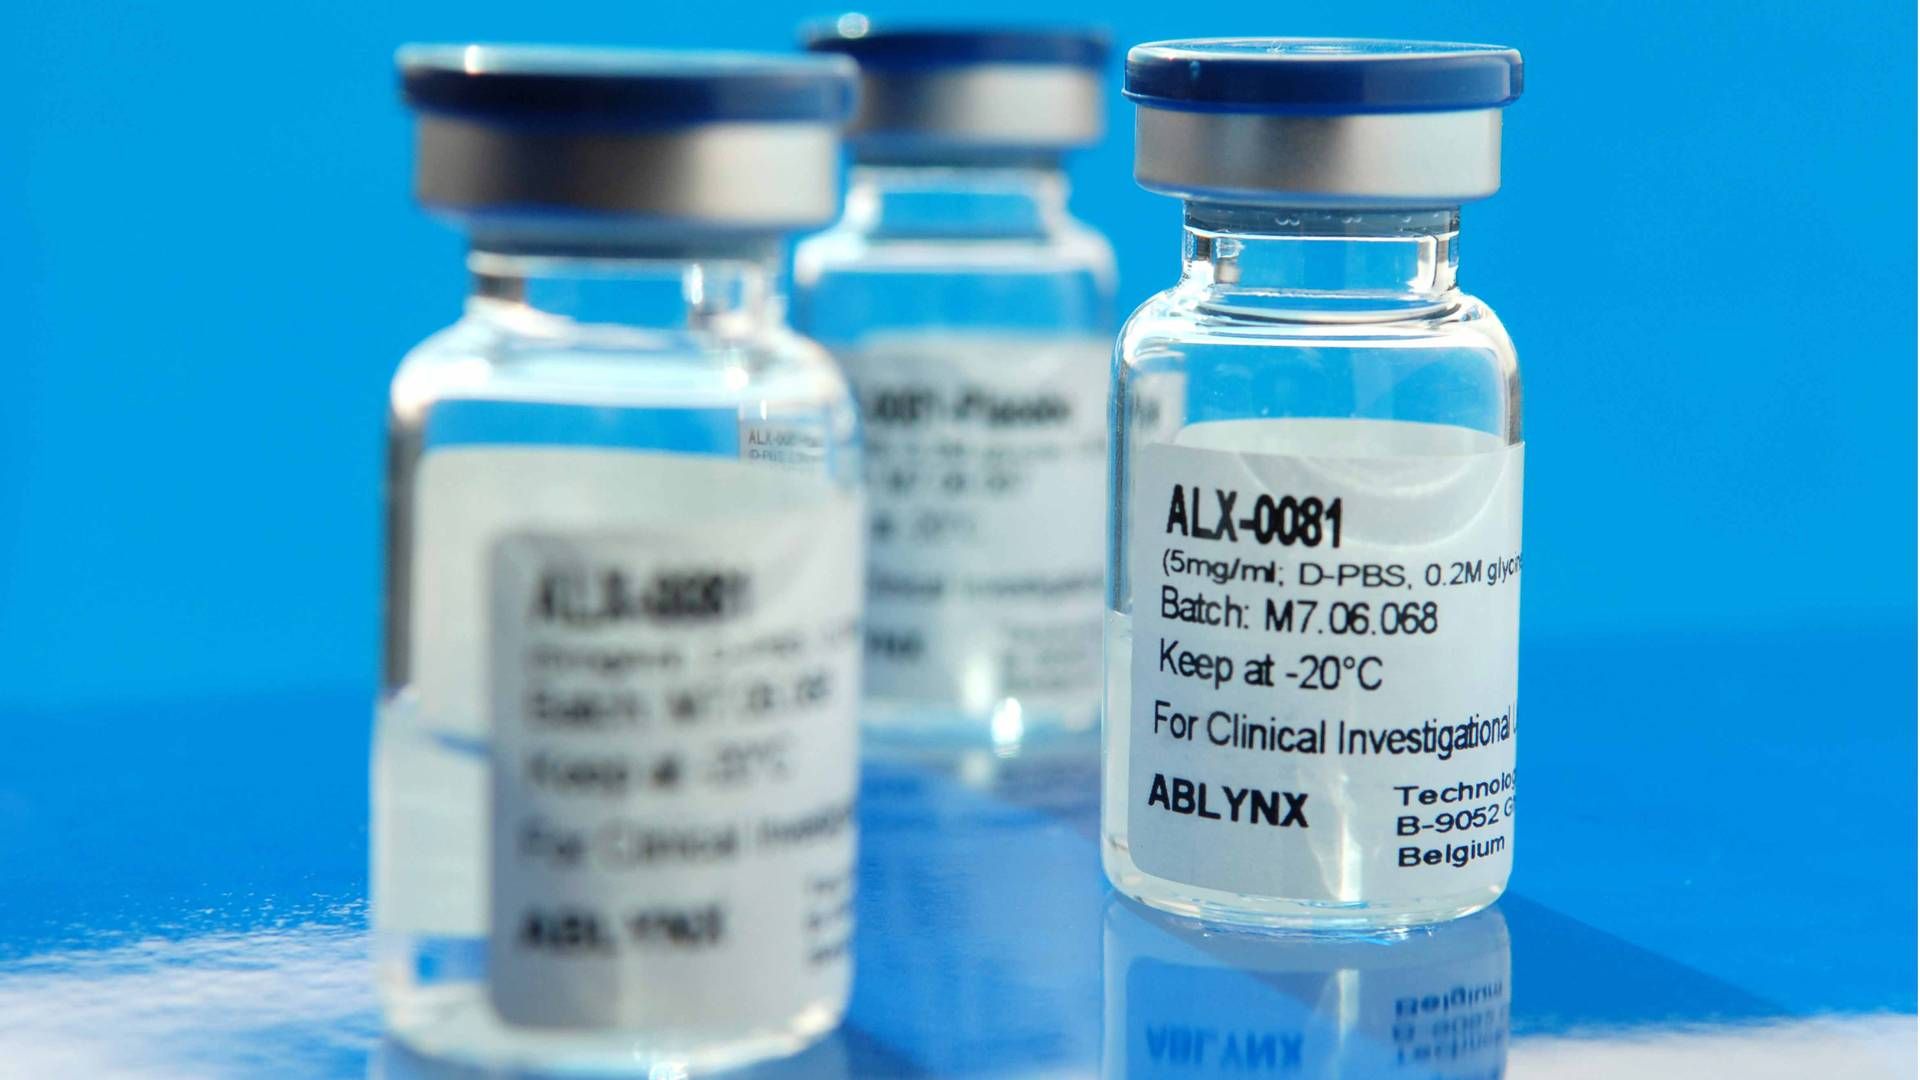 Ablynx' blødermiddel caplacizumab, tidligere kendt som ALX-0081, skal godkendes til salg i Europa, hvis det står til ekspertkomitéen CHMP. | Foto: Ablynx